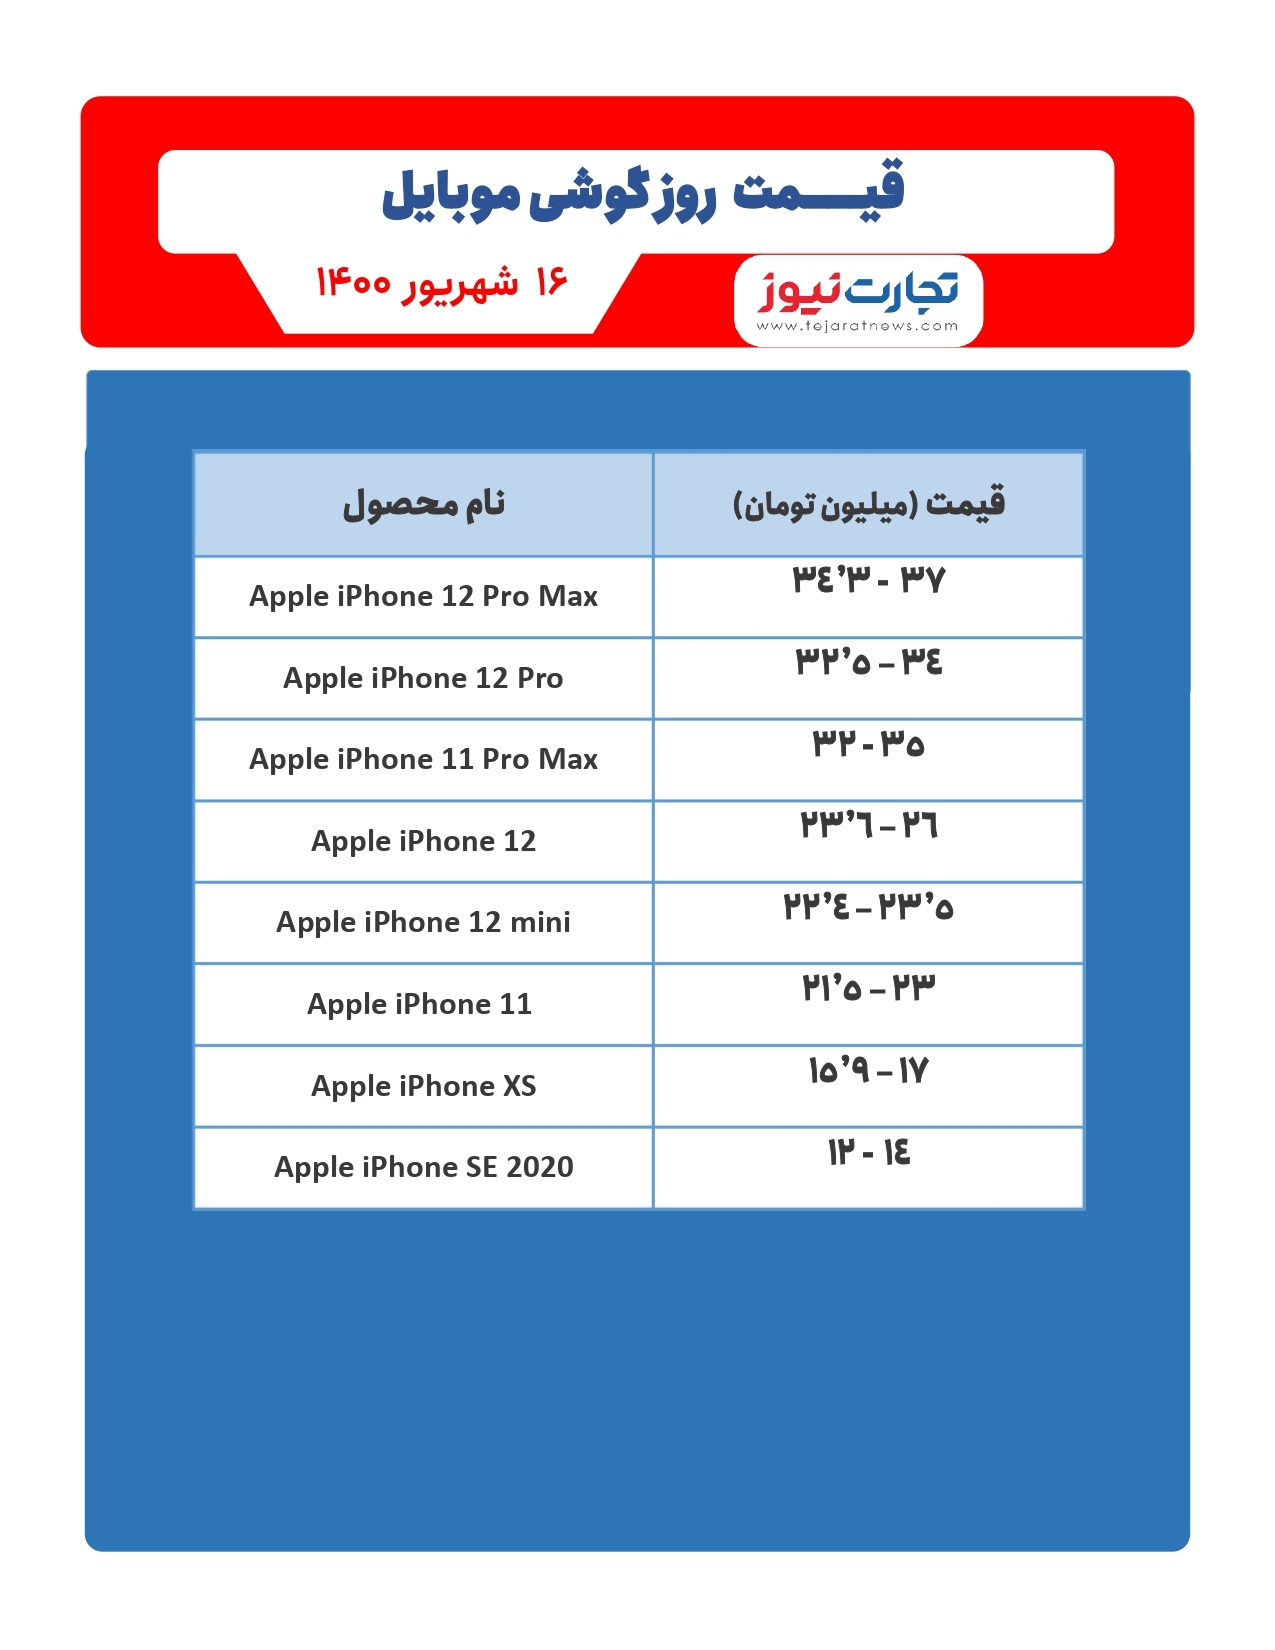 قیمت گوشی موبایل در بازار امروز ۱۶شهریور / معرفی گوشی گیمینگ جدید در بازار موبایل